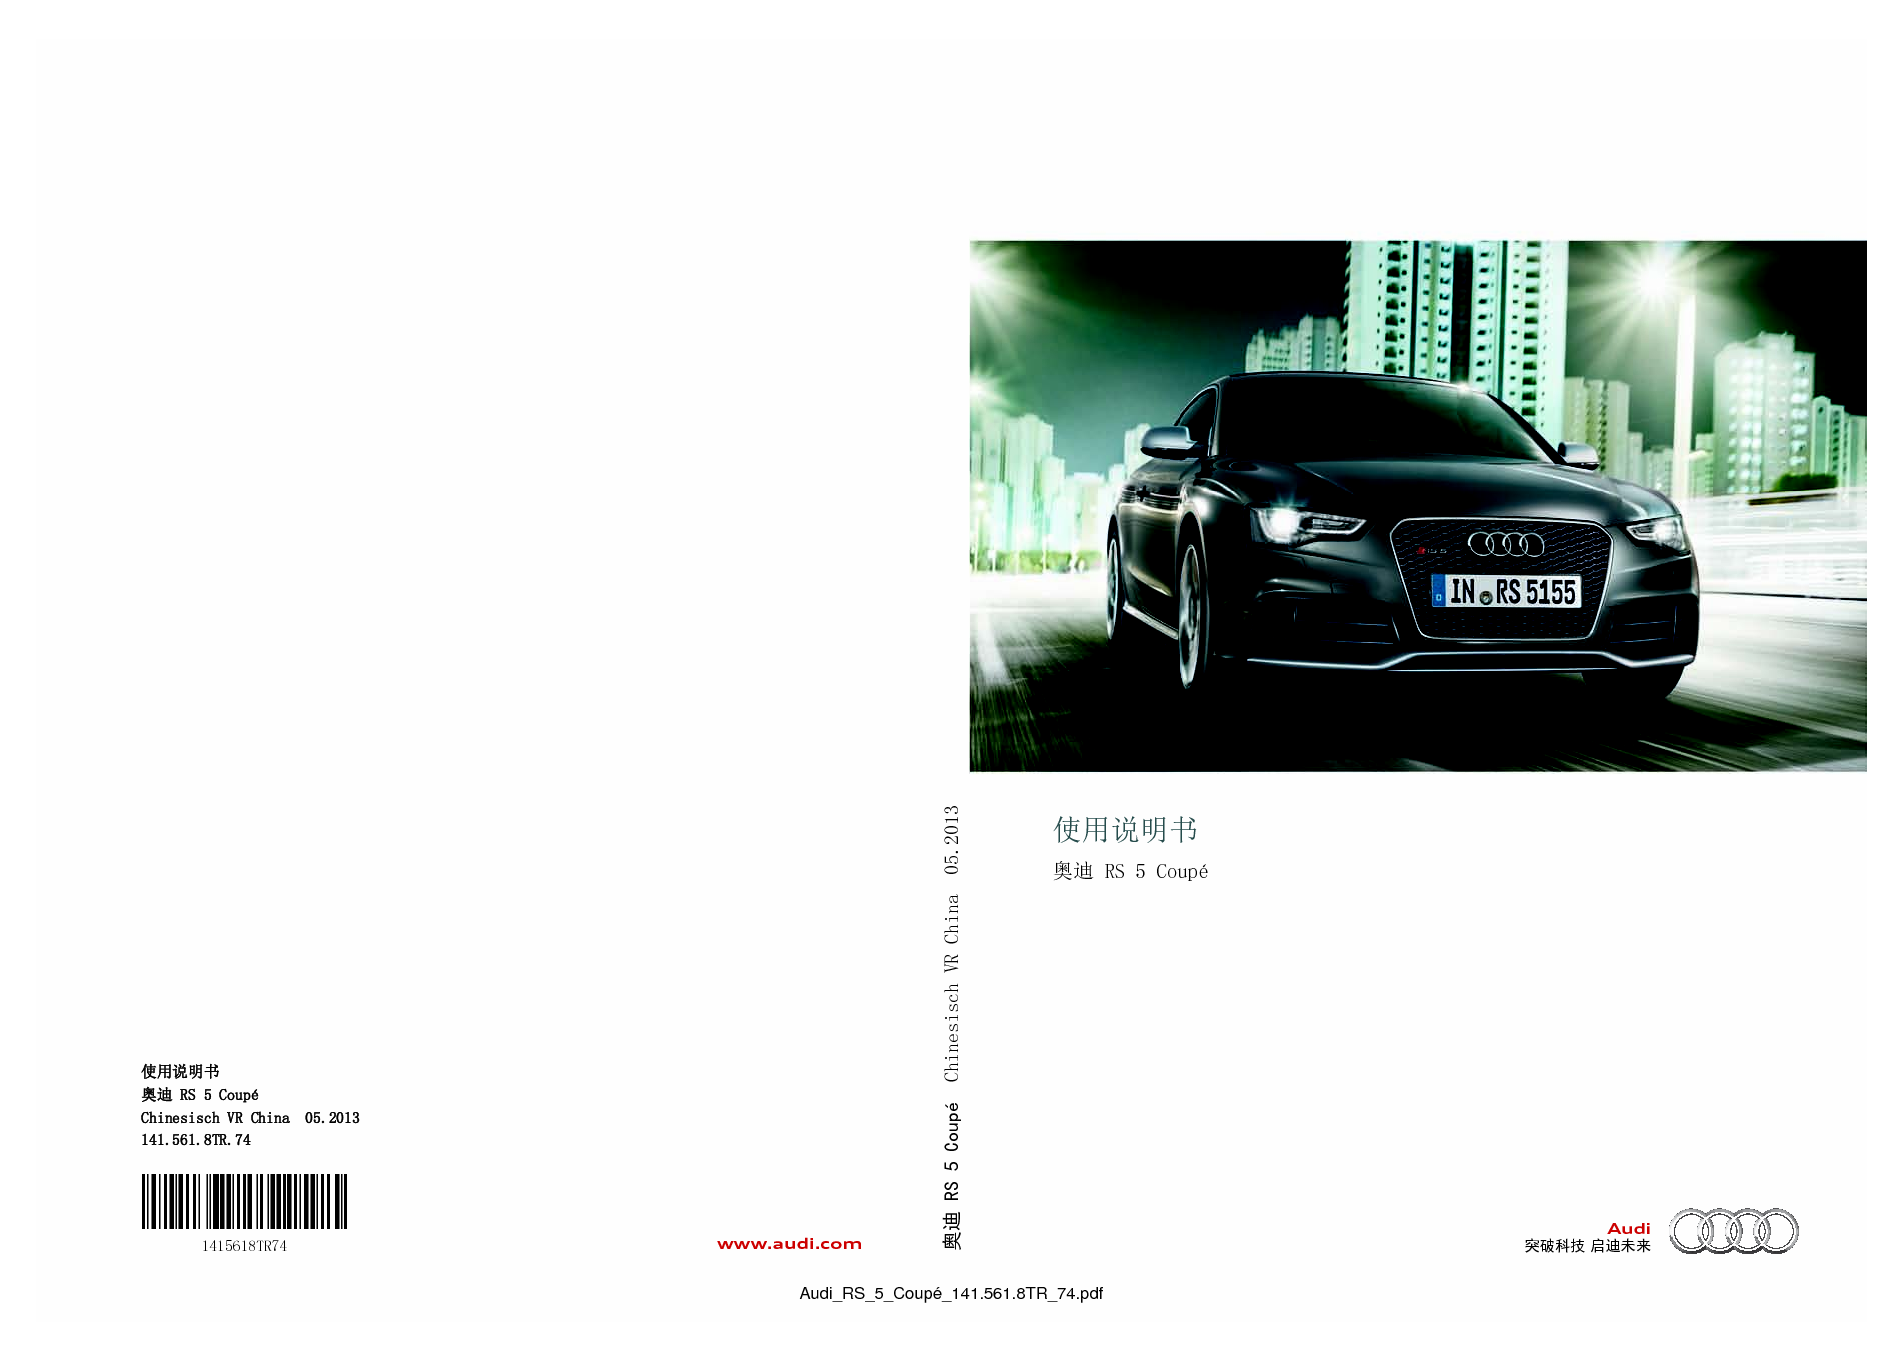 奥迪 Audi RS5 2013 用户手册 封面